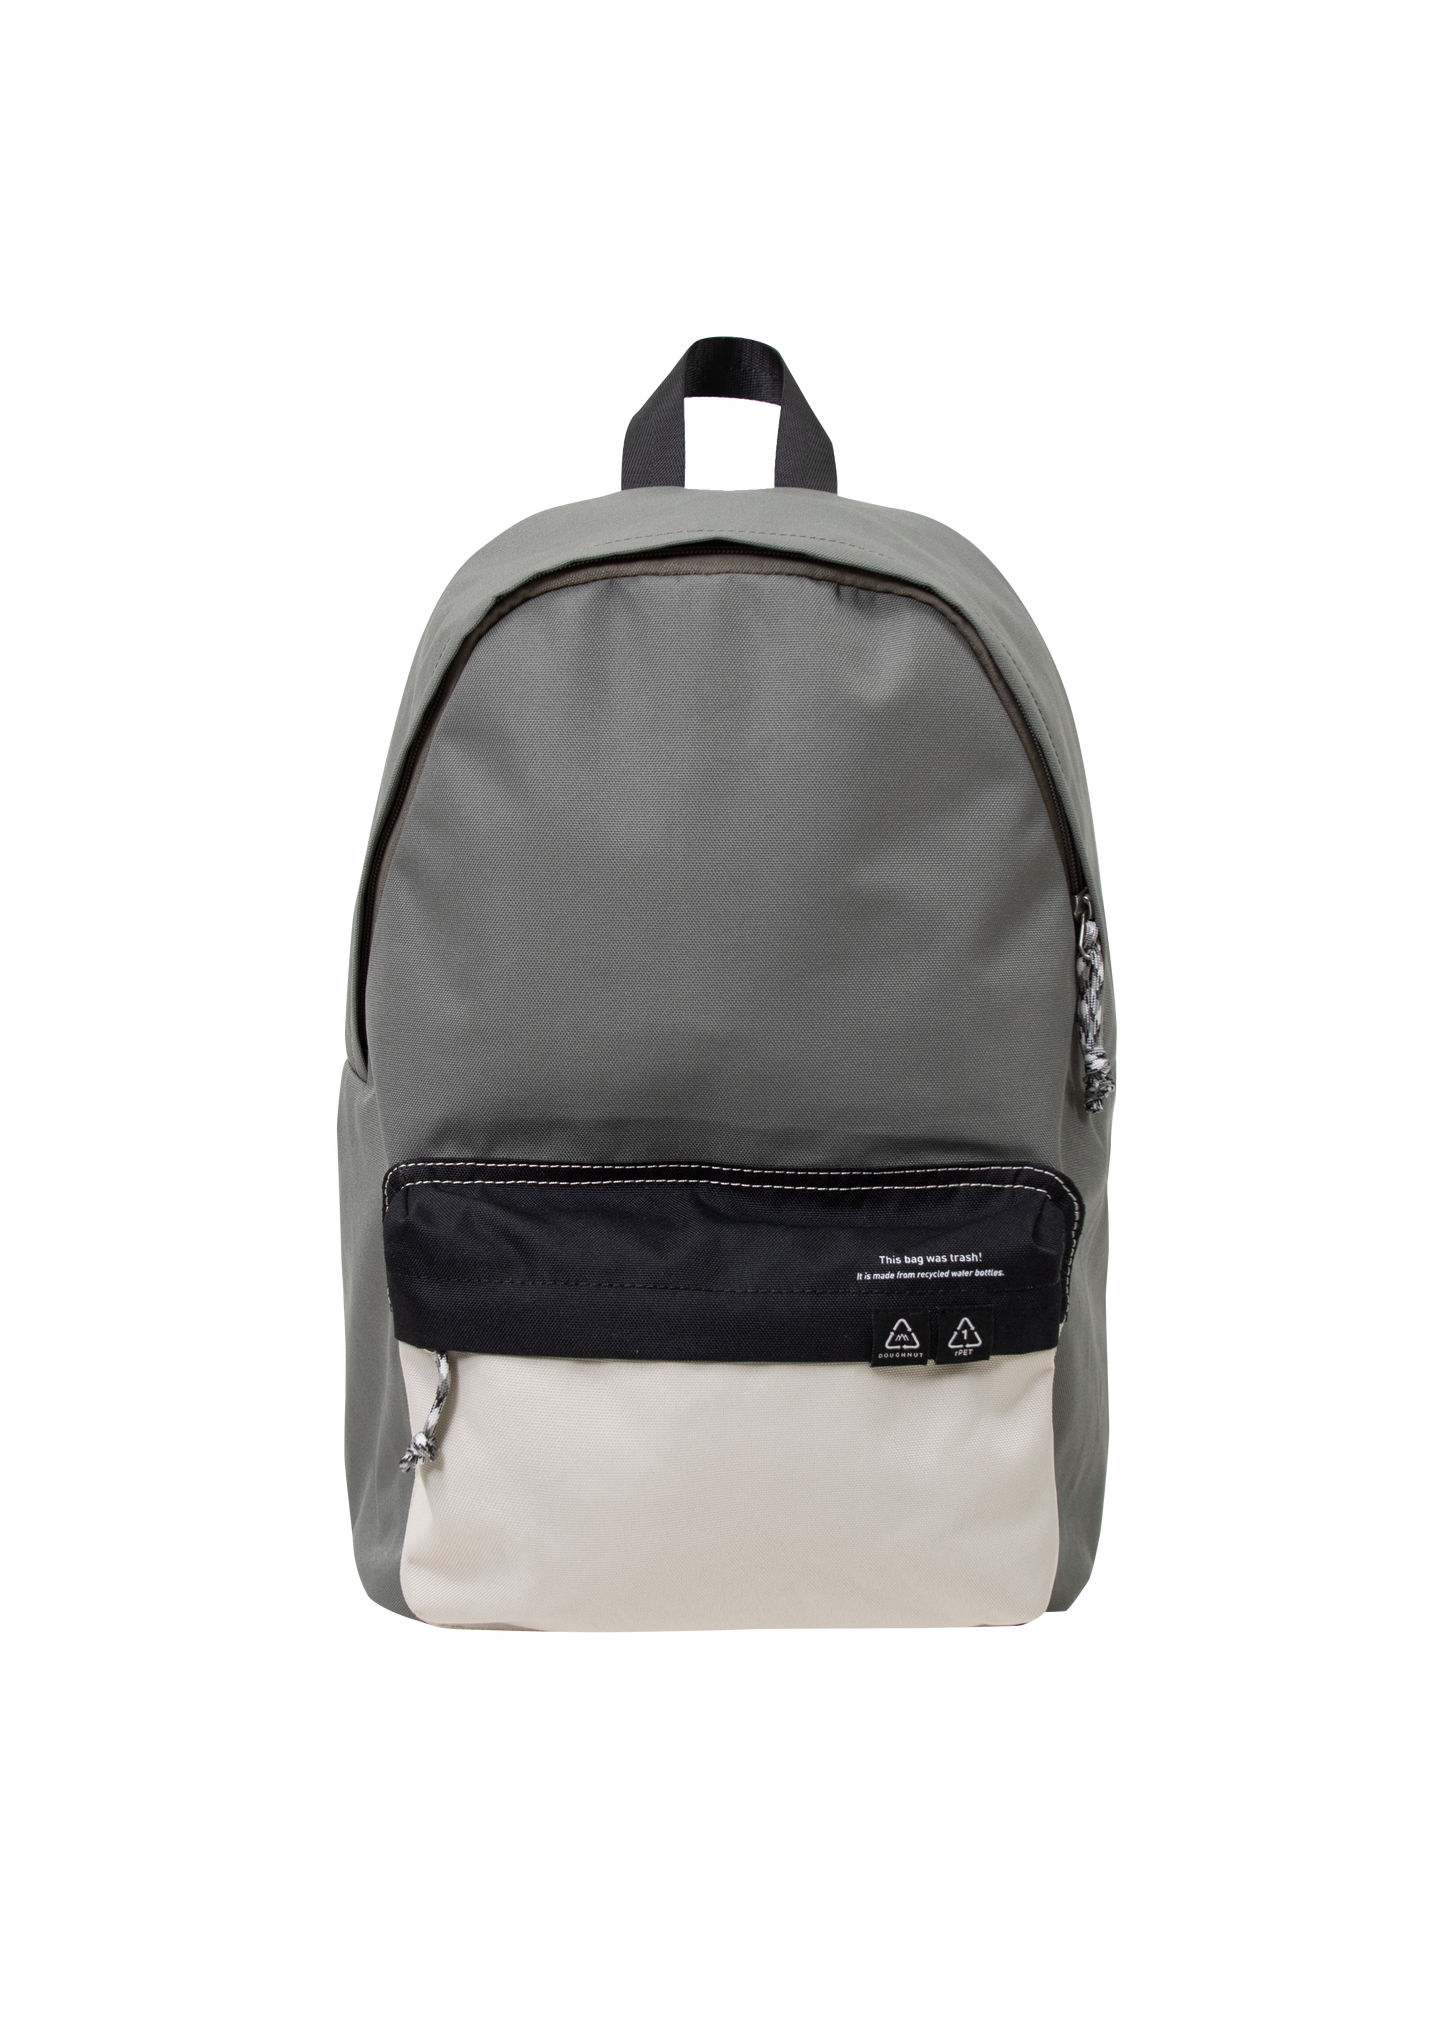 Plus One Reborn Series Backpack